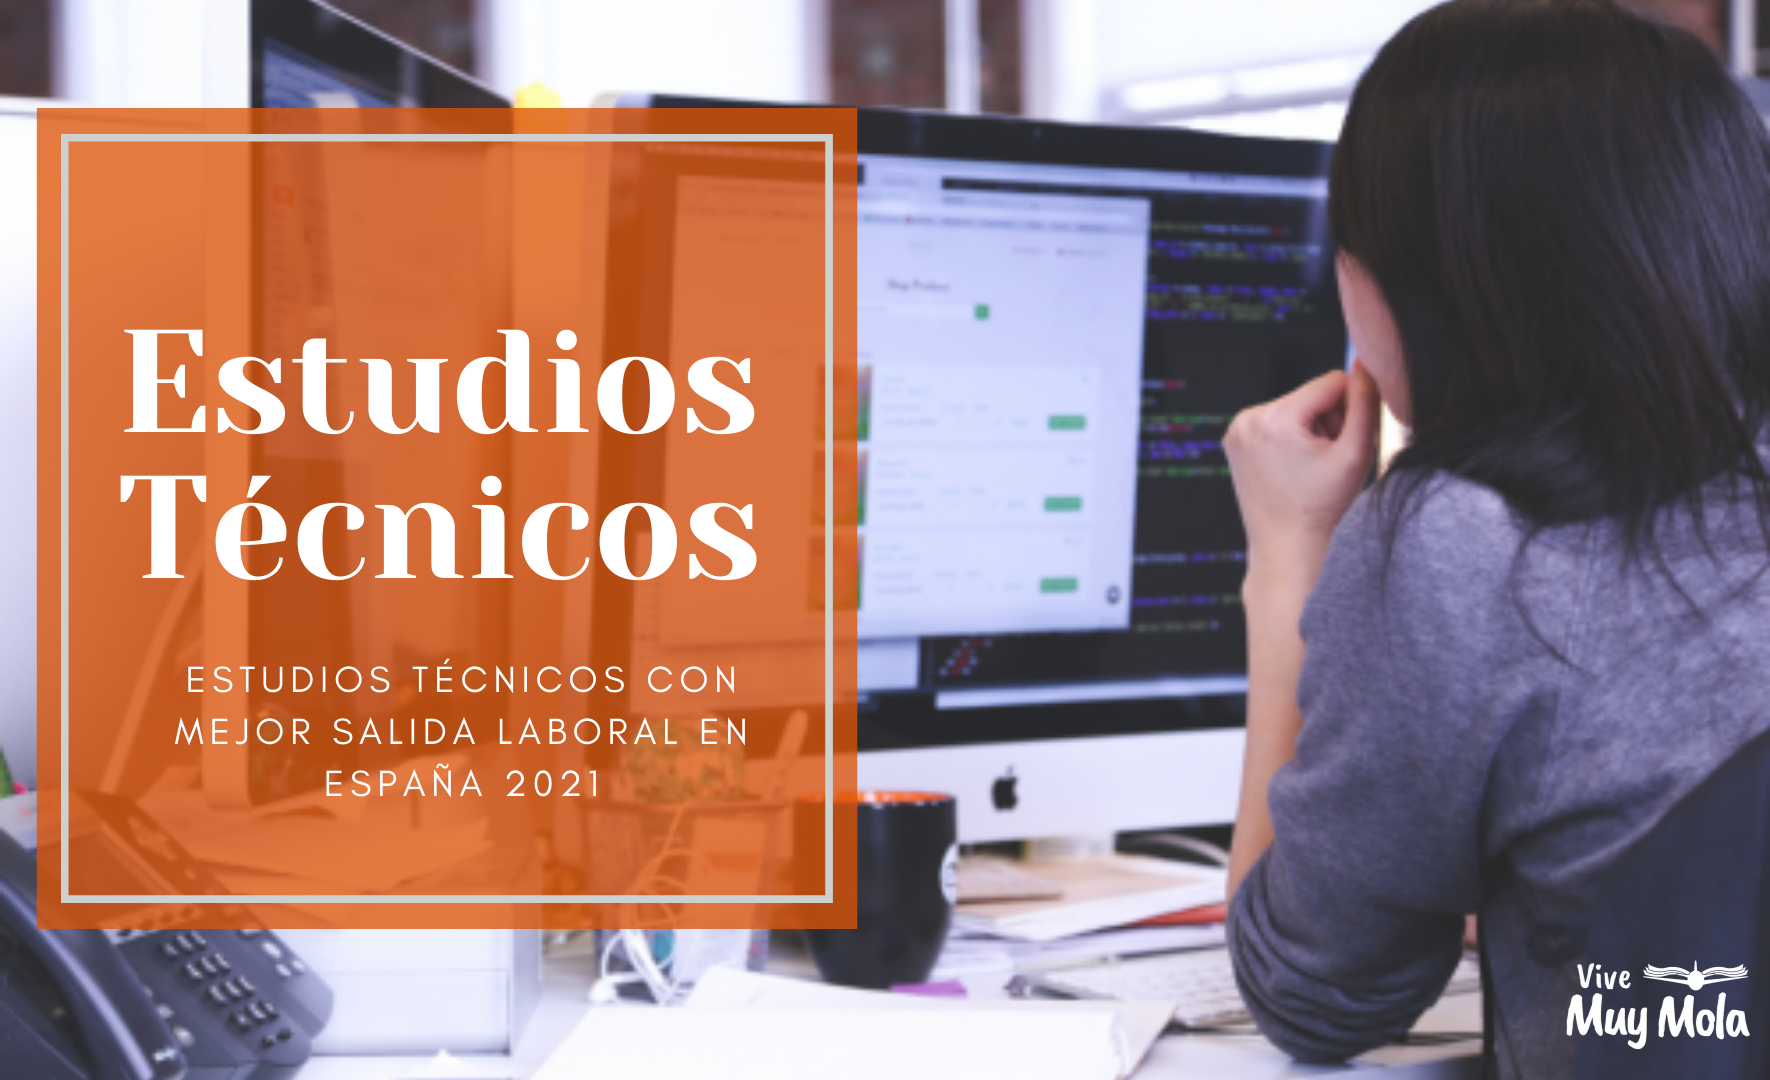 En este momento estás viendo Los estudios técnicos en España con mejor salida laboral en 2021.